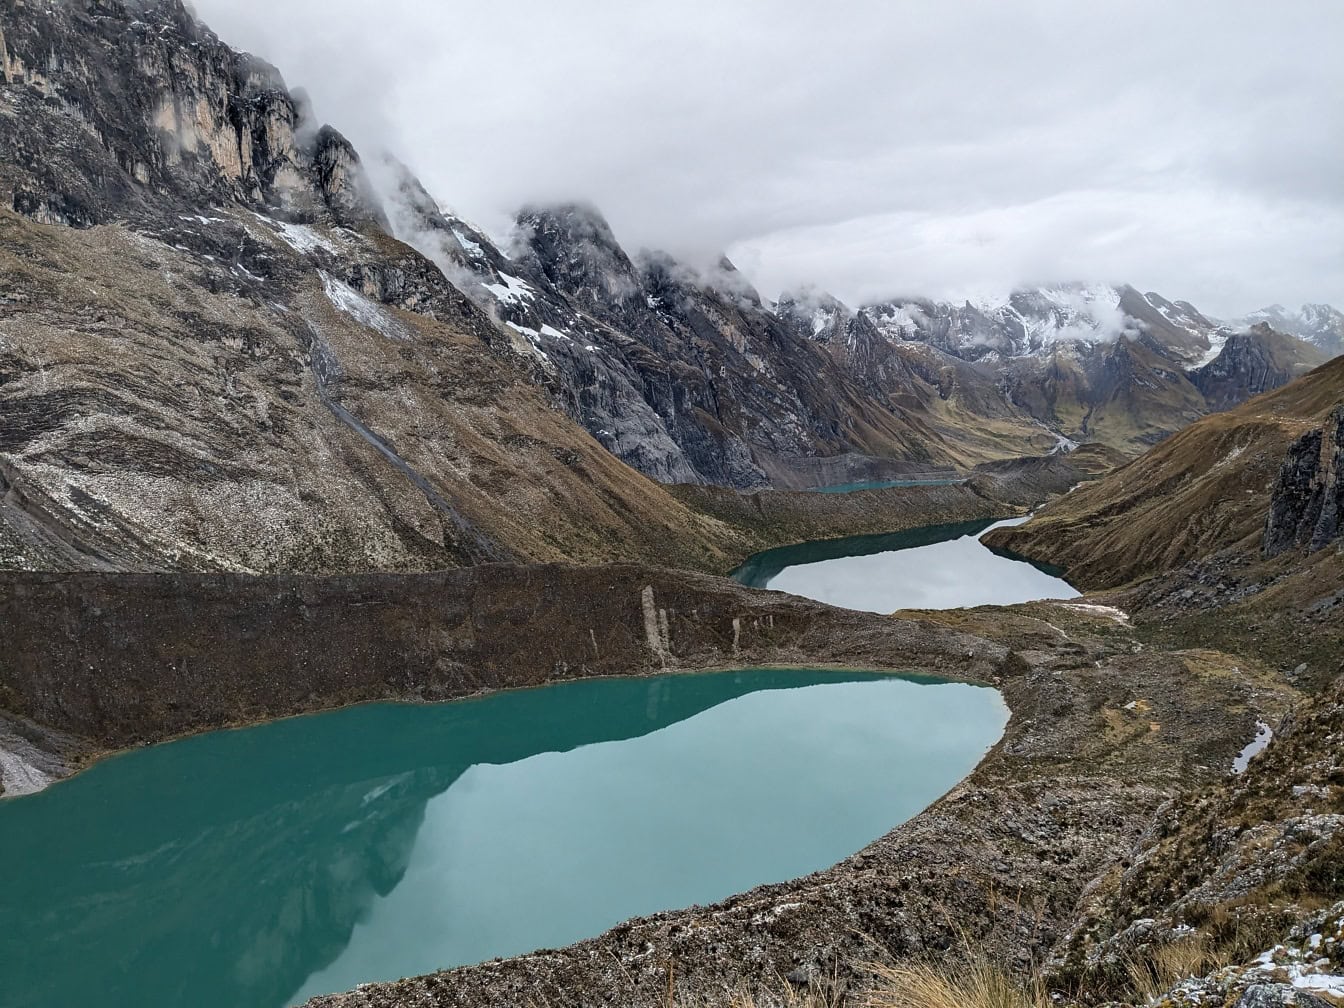 Jahuacocha Gölü, deniz seviyesinden yaklaşık dört bin metre yükseklikte Cordillera Huayhuash sıradağlarında güzel bir buzul lagünü